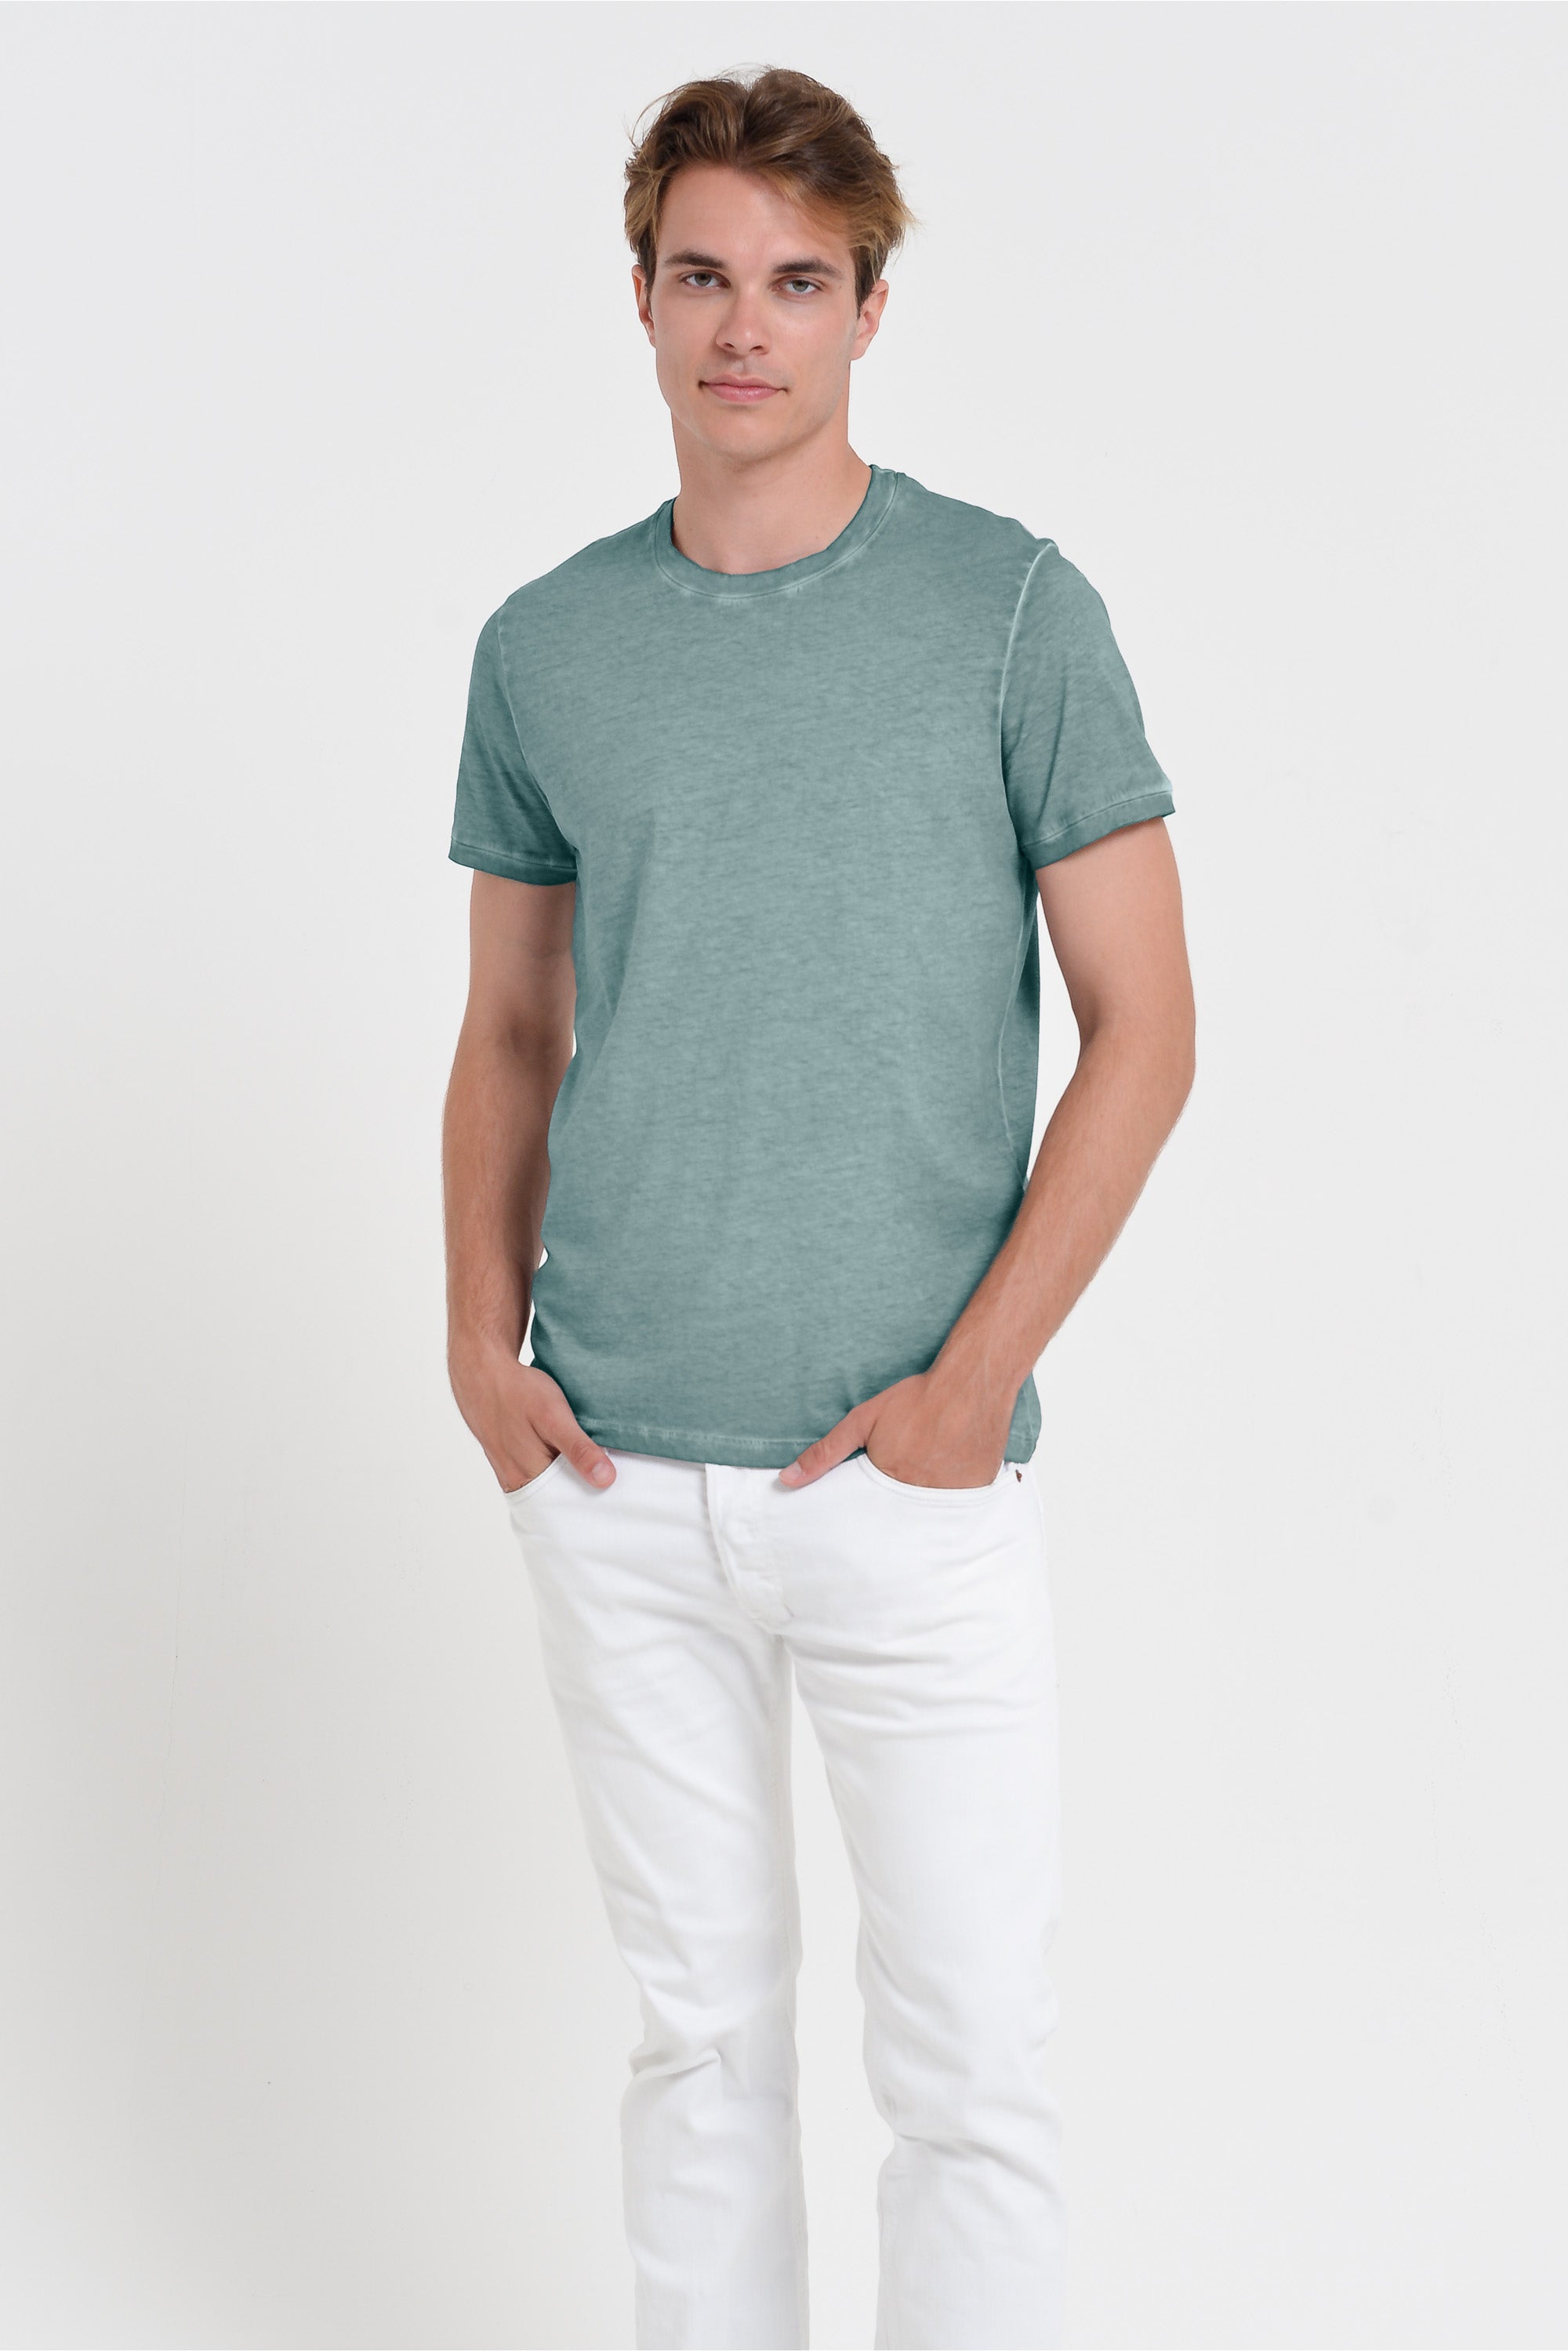 Smart Casual Cotton T-Shirt - Shark